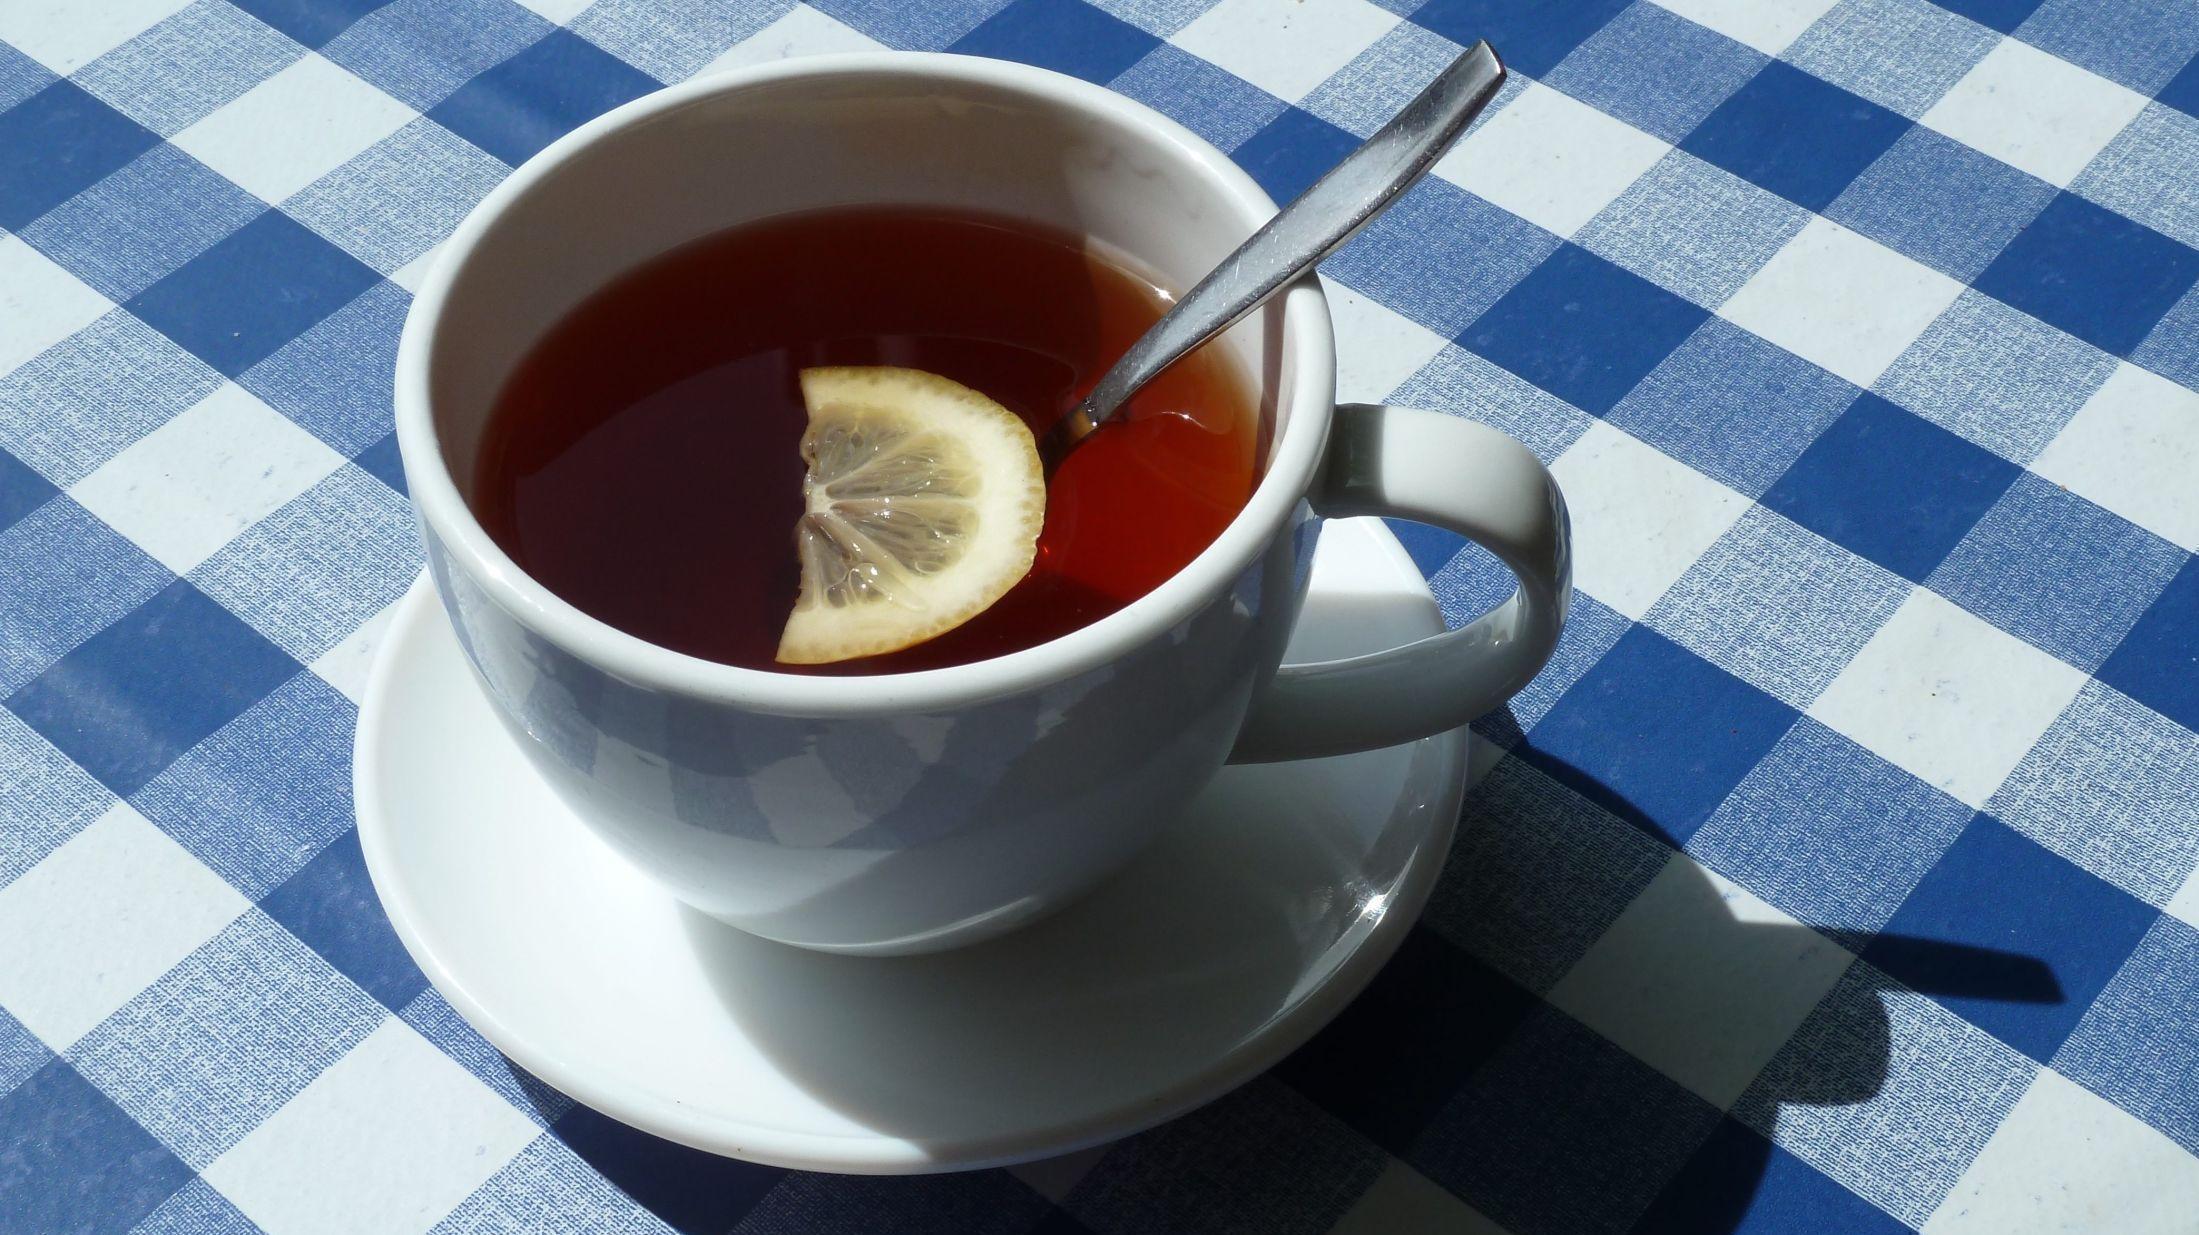 KLASSIKER: Te med en skive sitron passer godt på kalde vinterdager. Foto: Jan Ovind/VG